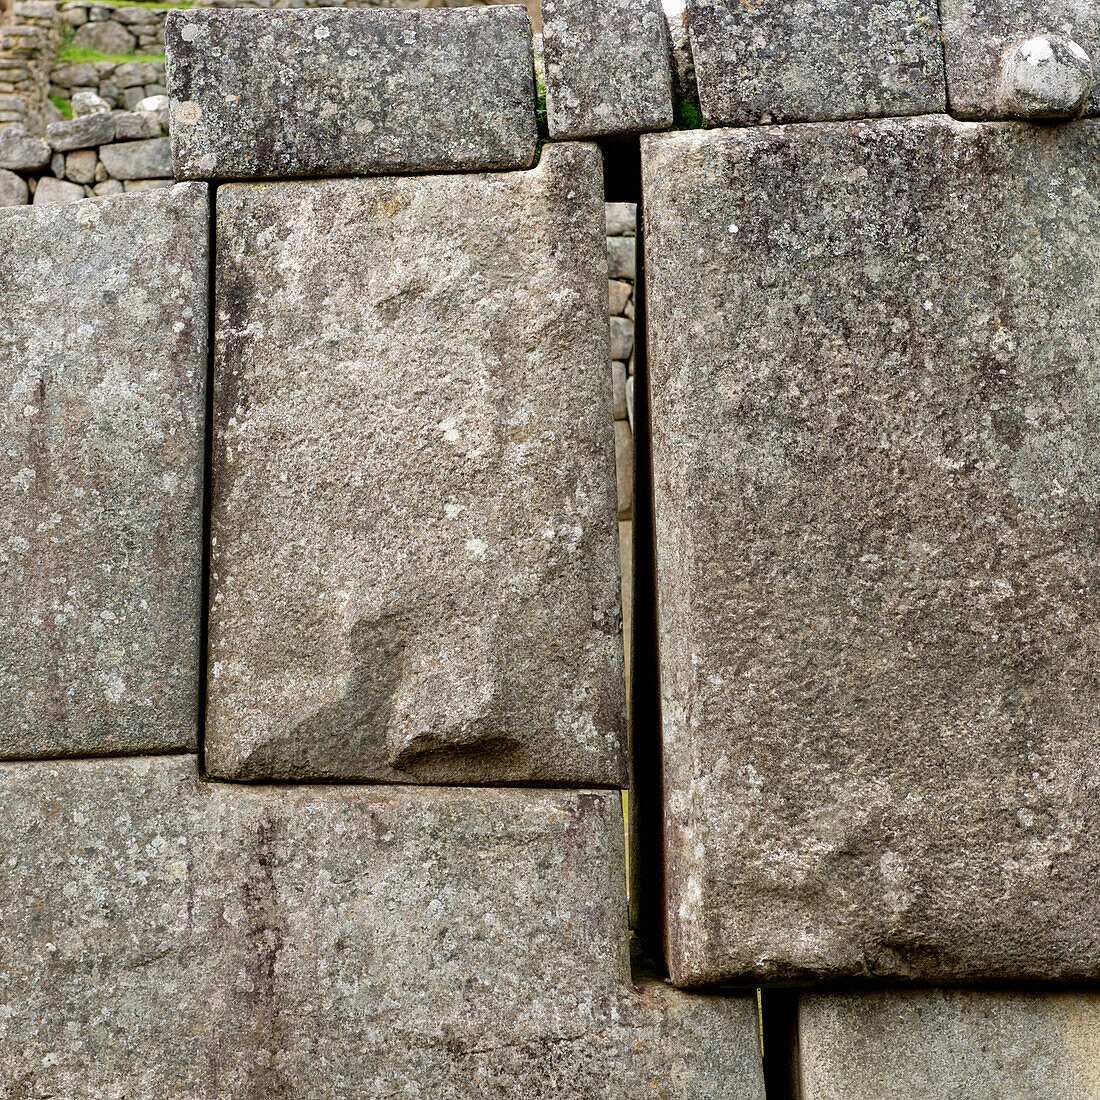 'Close-Up Of Stone Structure At Machu Picchu; Peru'